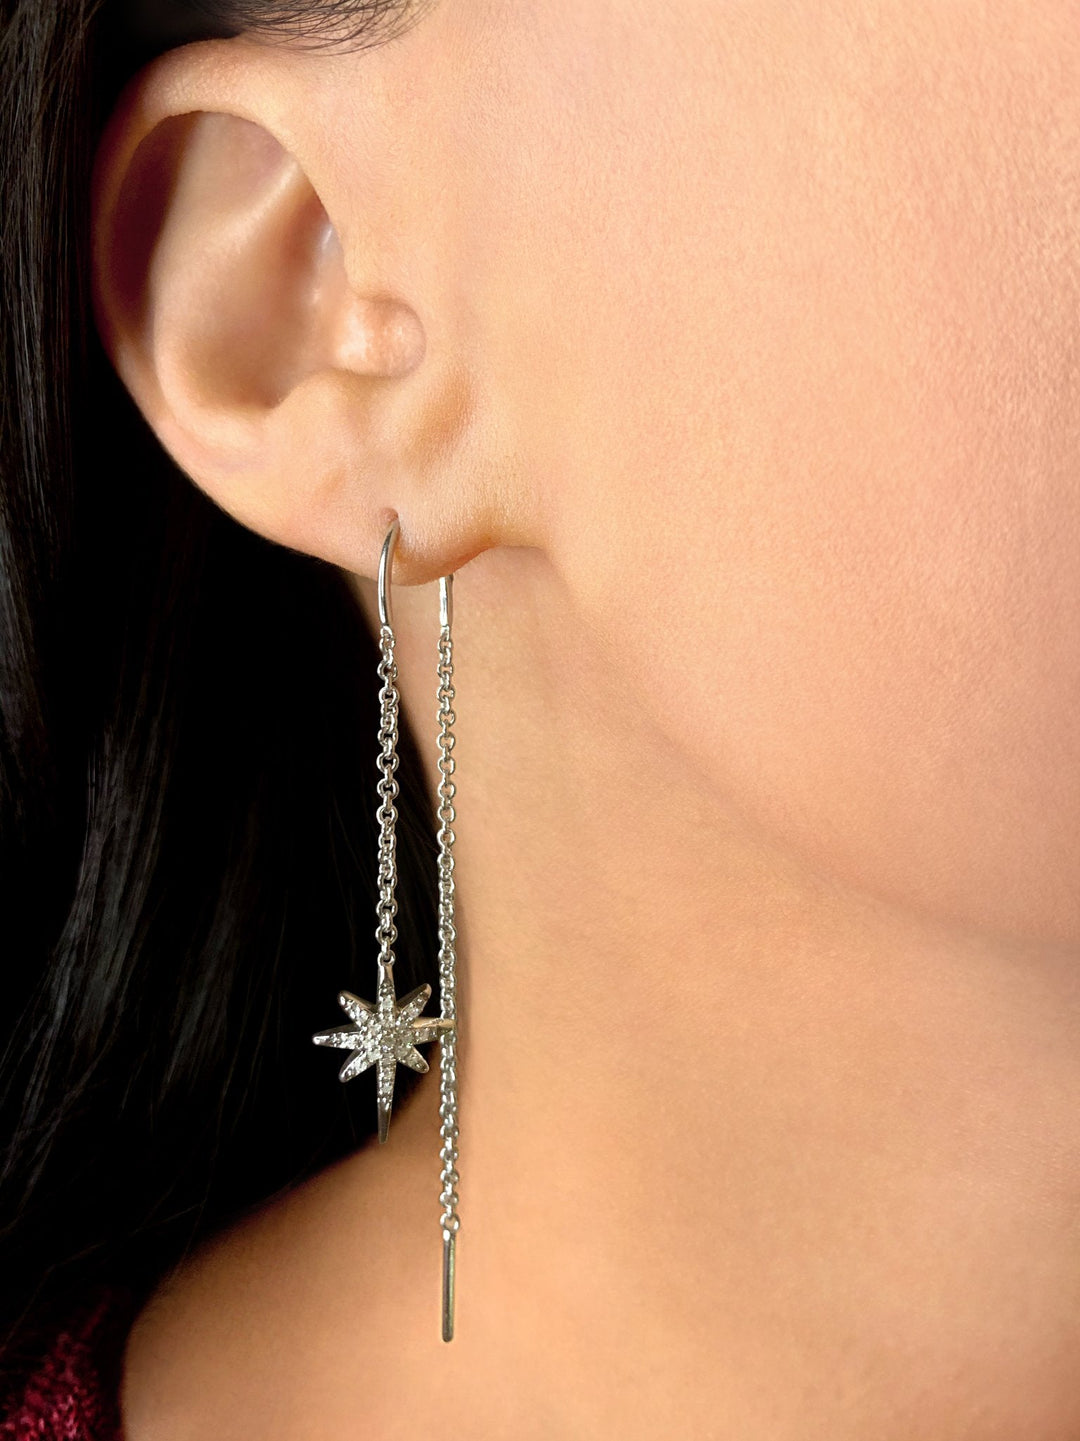 Twinkle Star Tack-In Diamond Earrings in 14K White Gold